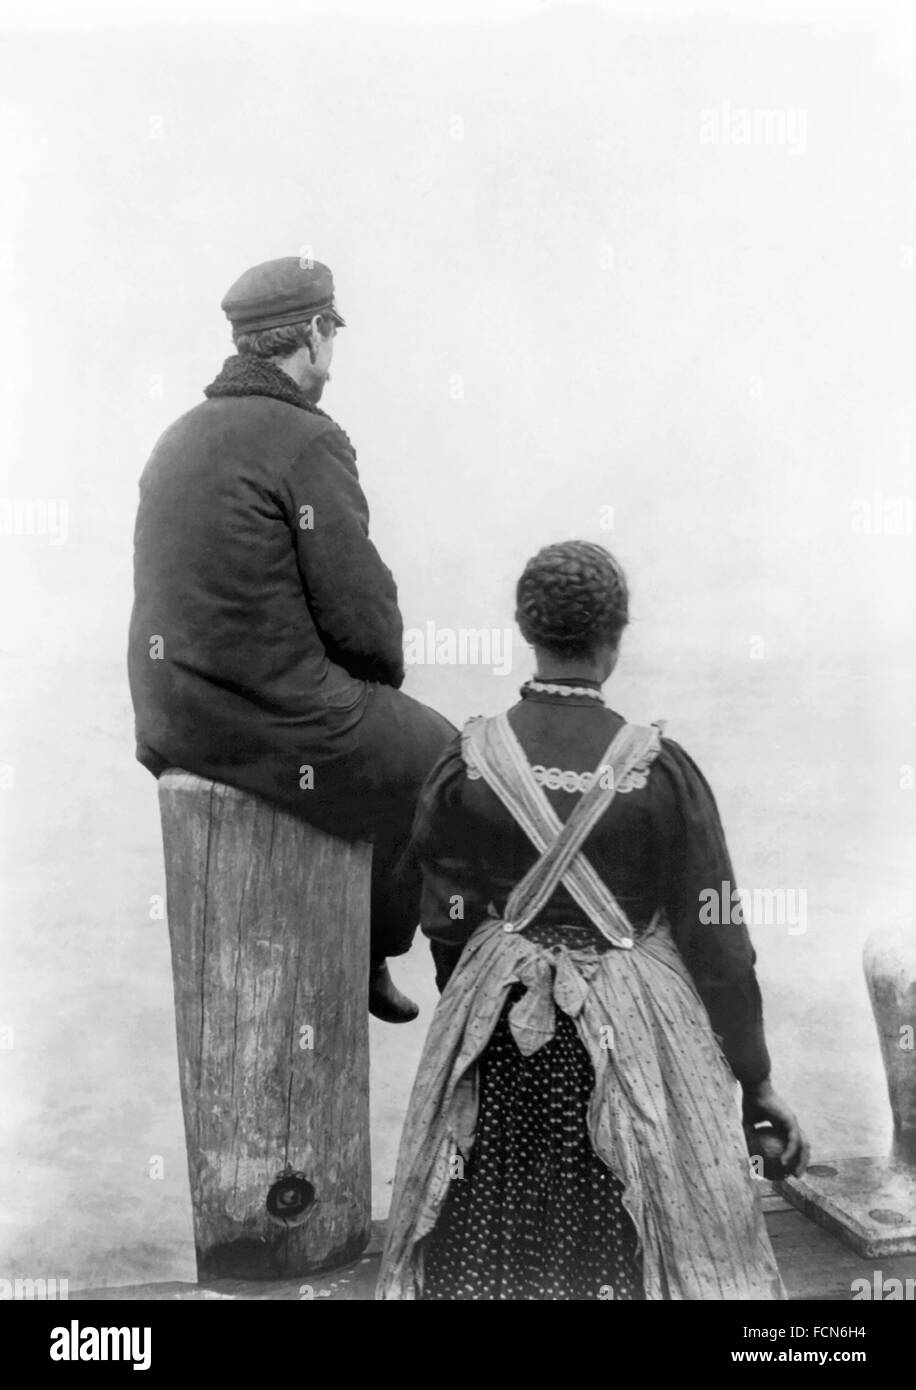 Ellis Island Immigrantst. Dos inmigrantes (?) en el dock en Ellis Island, Nueva York, NY, c. 1912. La fotografía original se titula "Dos emigrantes a la orilla del mar" (Biblioteca del Congreso). Foto de stock